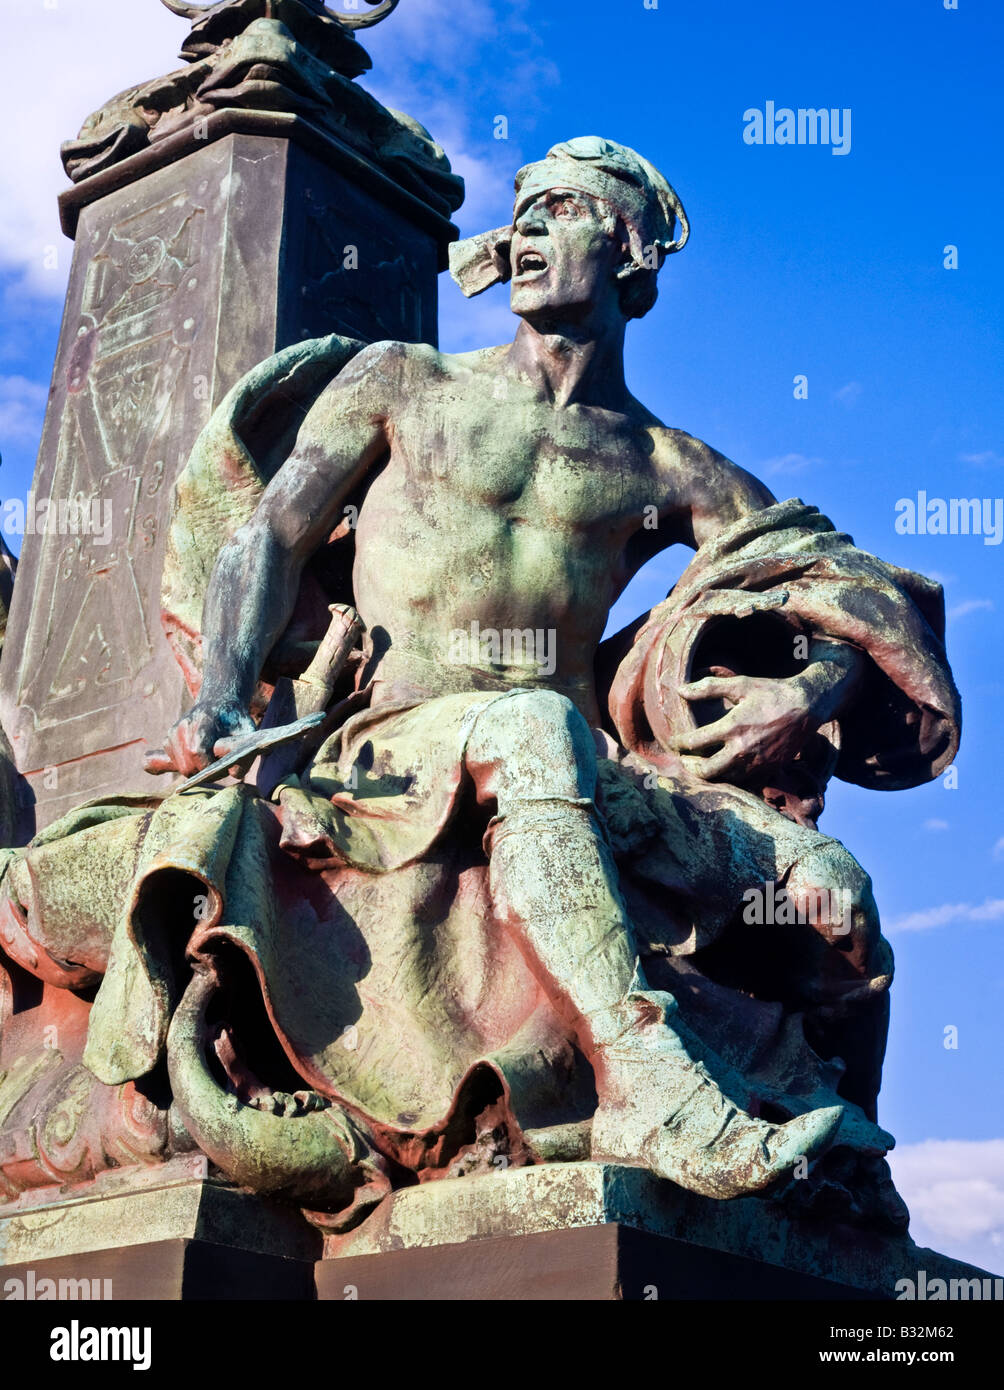 Pablo R Montford de escultura que representa la guerra en modo puente Kelvin, Glasgow, Escocia. Foto de stock